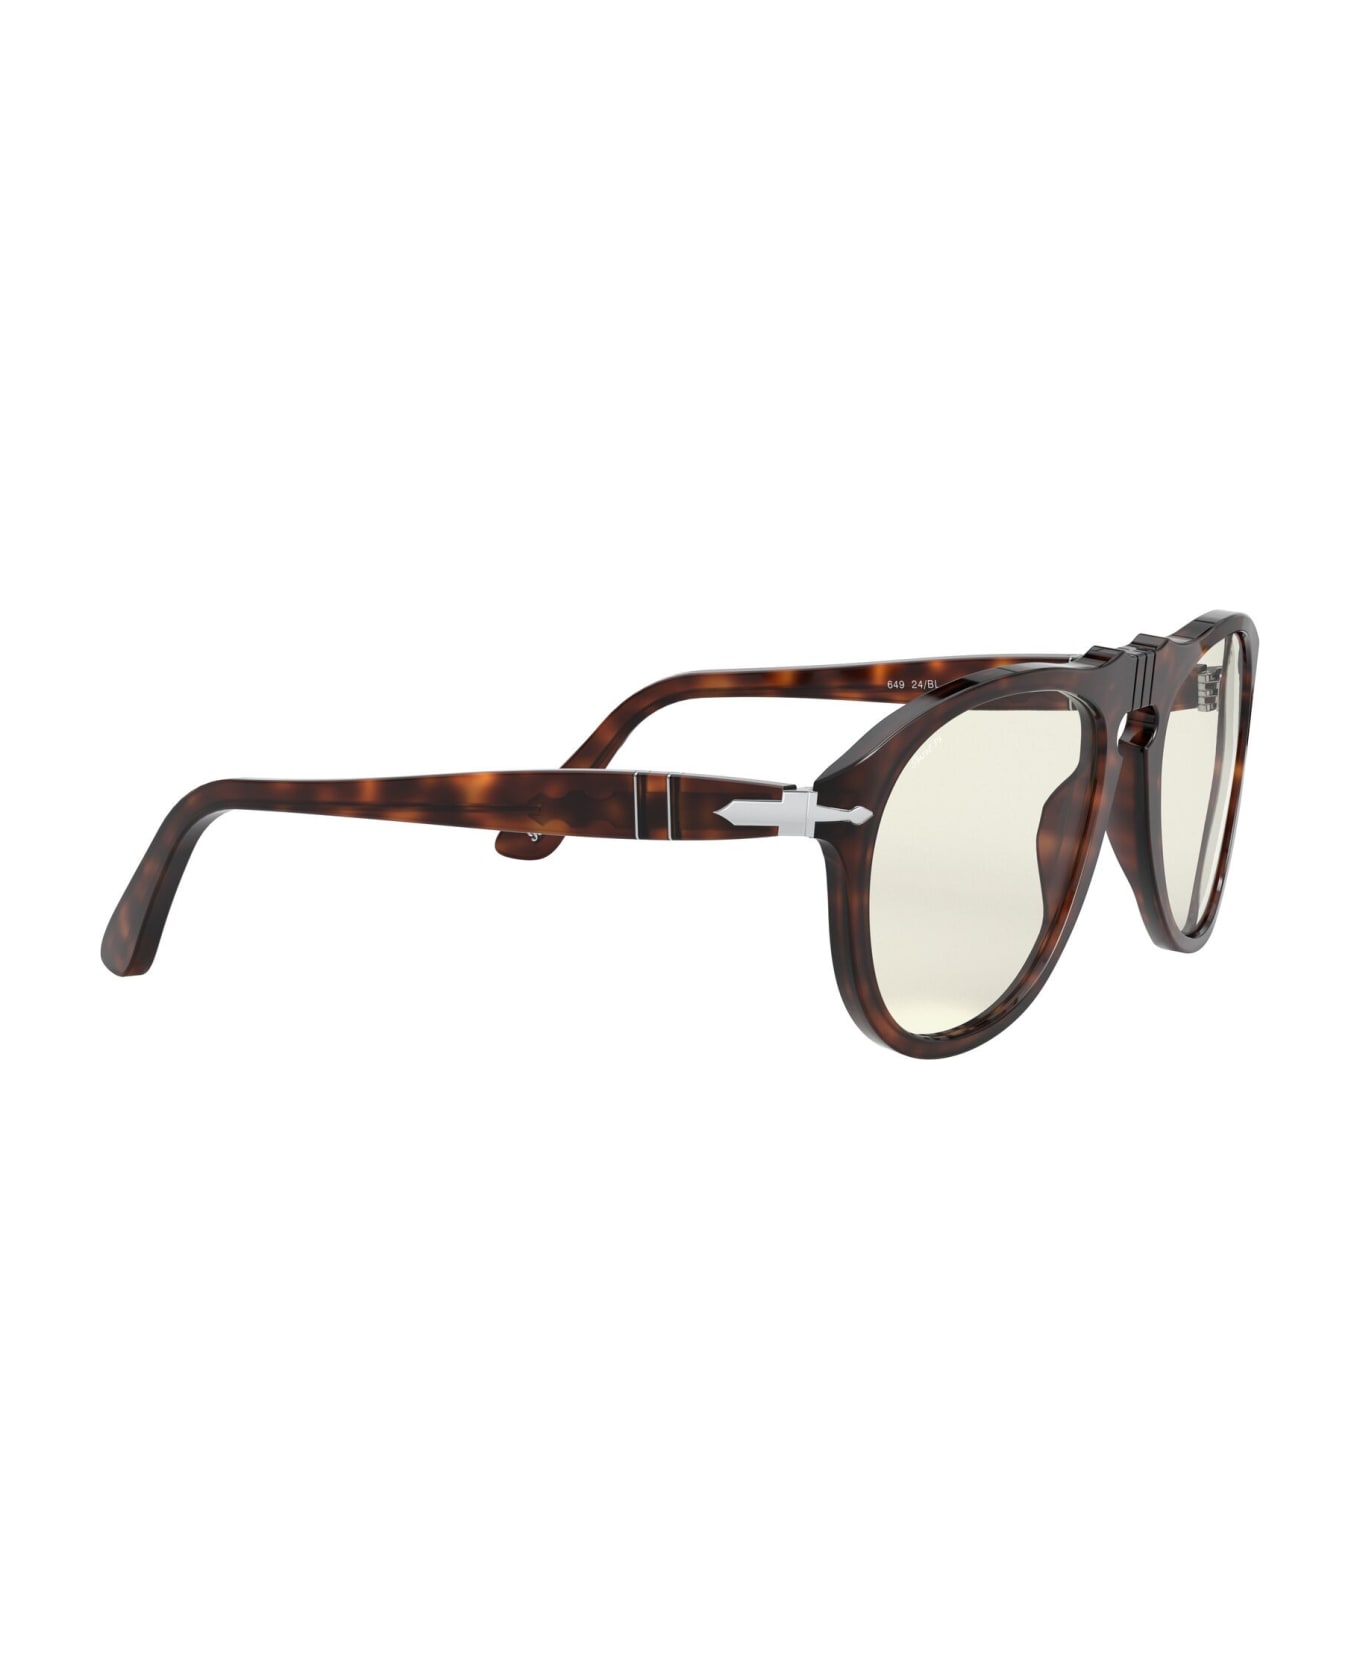 Persol Sunglasses - Marrone tartarugato/Grigio サングラス